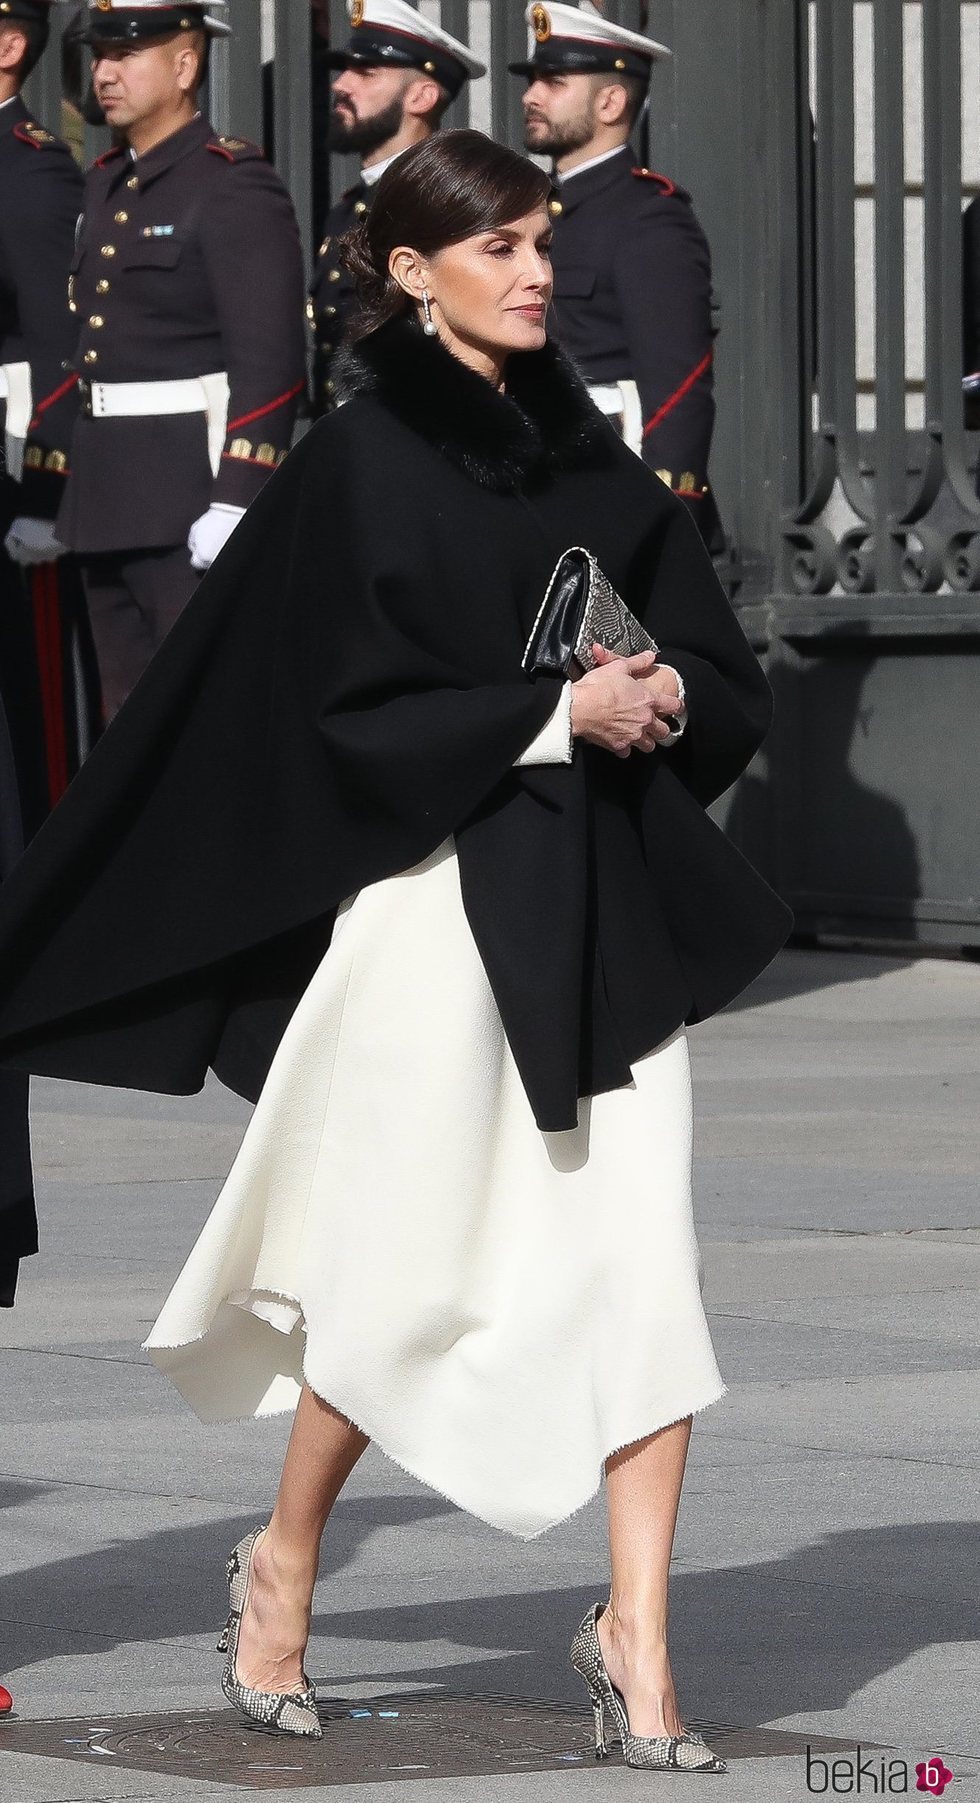 La Reina Letizia apueta por el blanco y negro y el estampado de serpiente en la Apertura de la XIV Legislatura